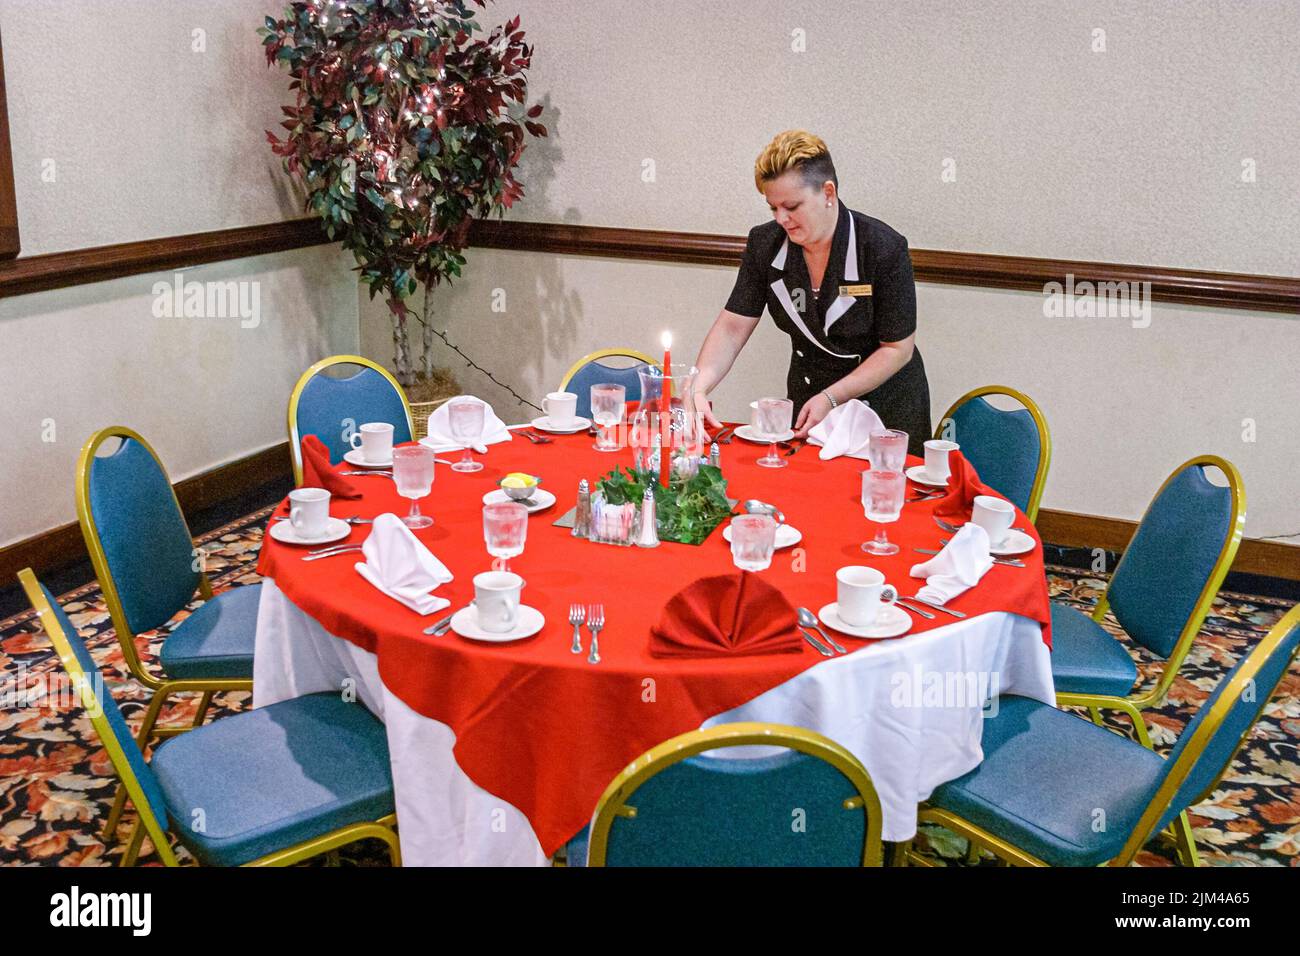 Hampton Virginia,Tidewater Area,Quality Inn Hotel hôtels hébergement inn salle de conférence gouvernante définition table femme, personnes personne scène dans une photo Banque D'Images